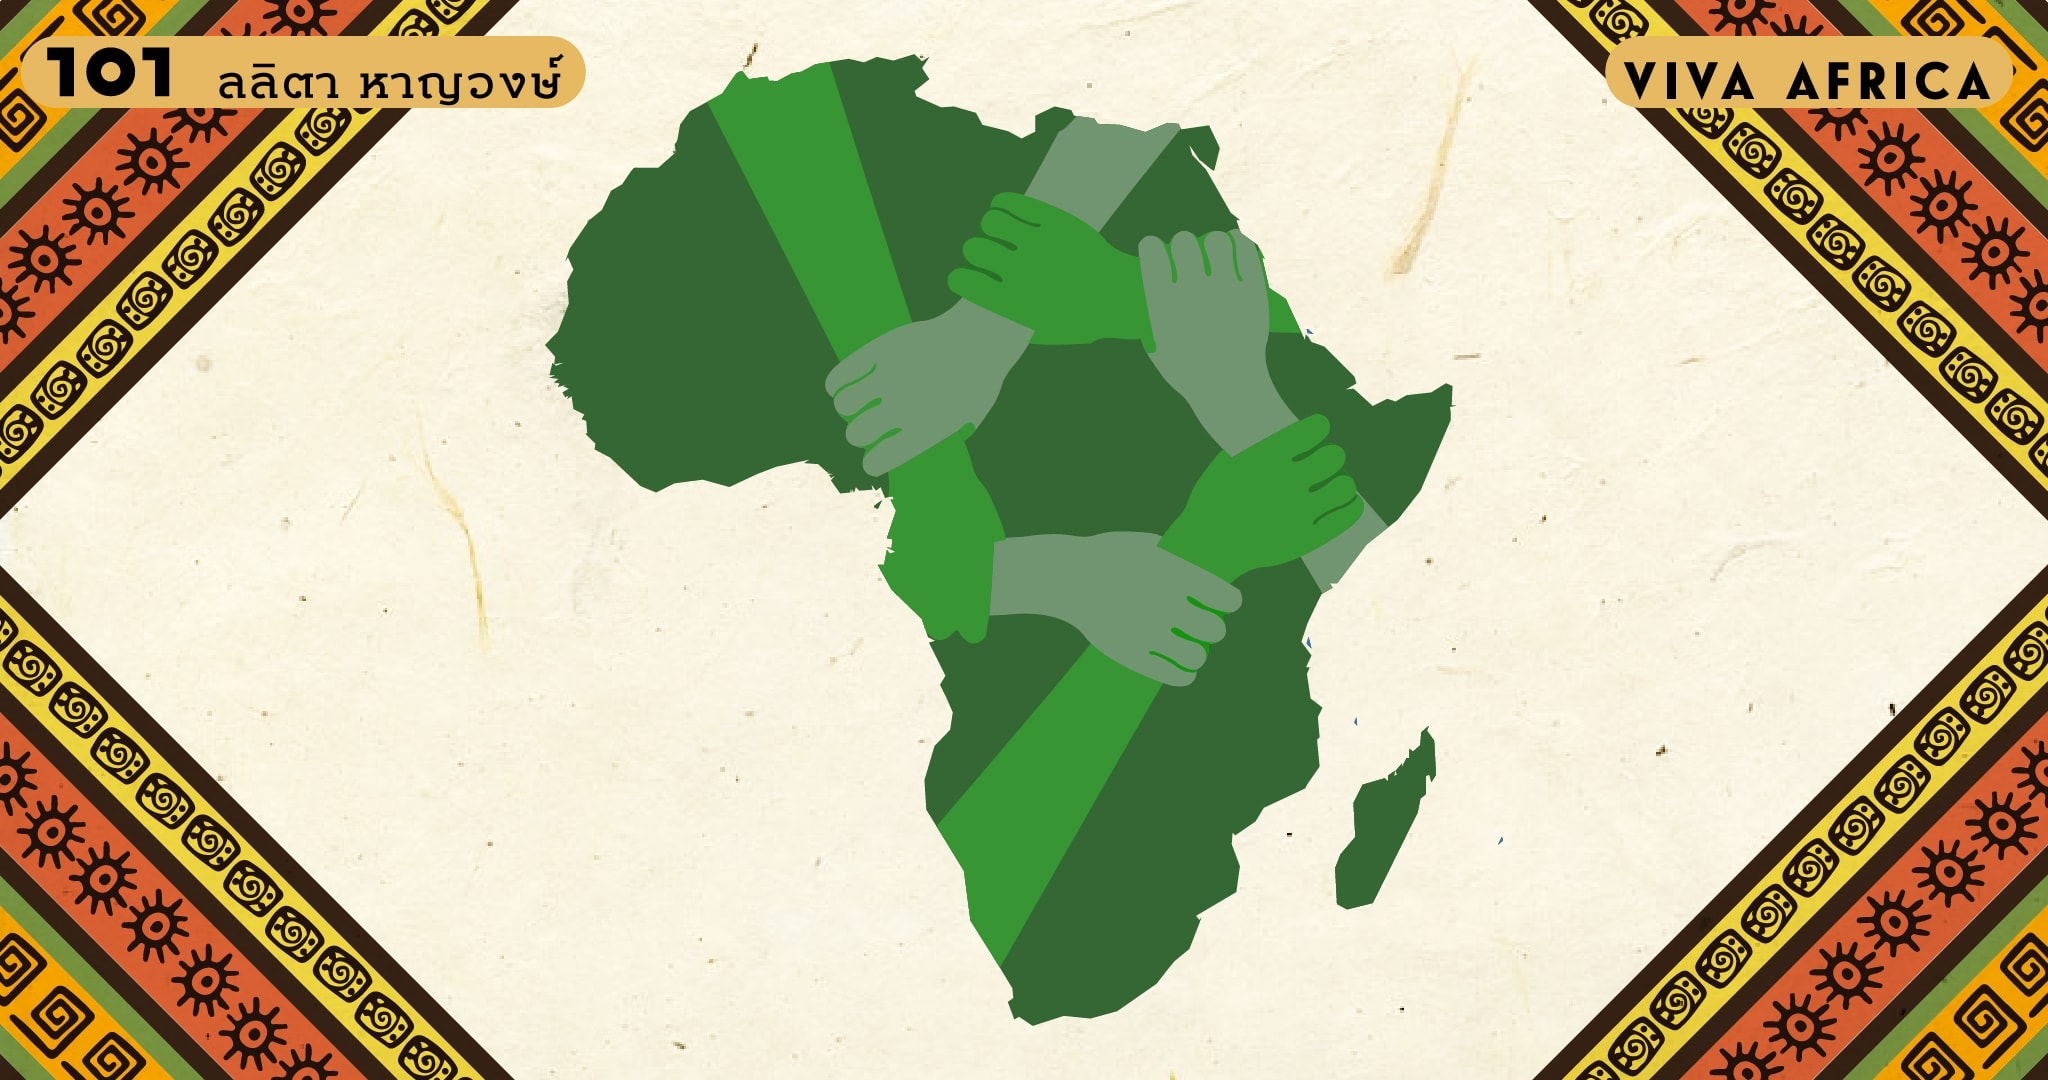 ทำความรู้จักสหภาพแอฟริกา: เรื่องจริงหรือเพียงอุดมคติ?